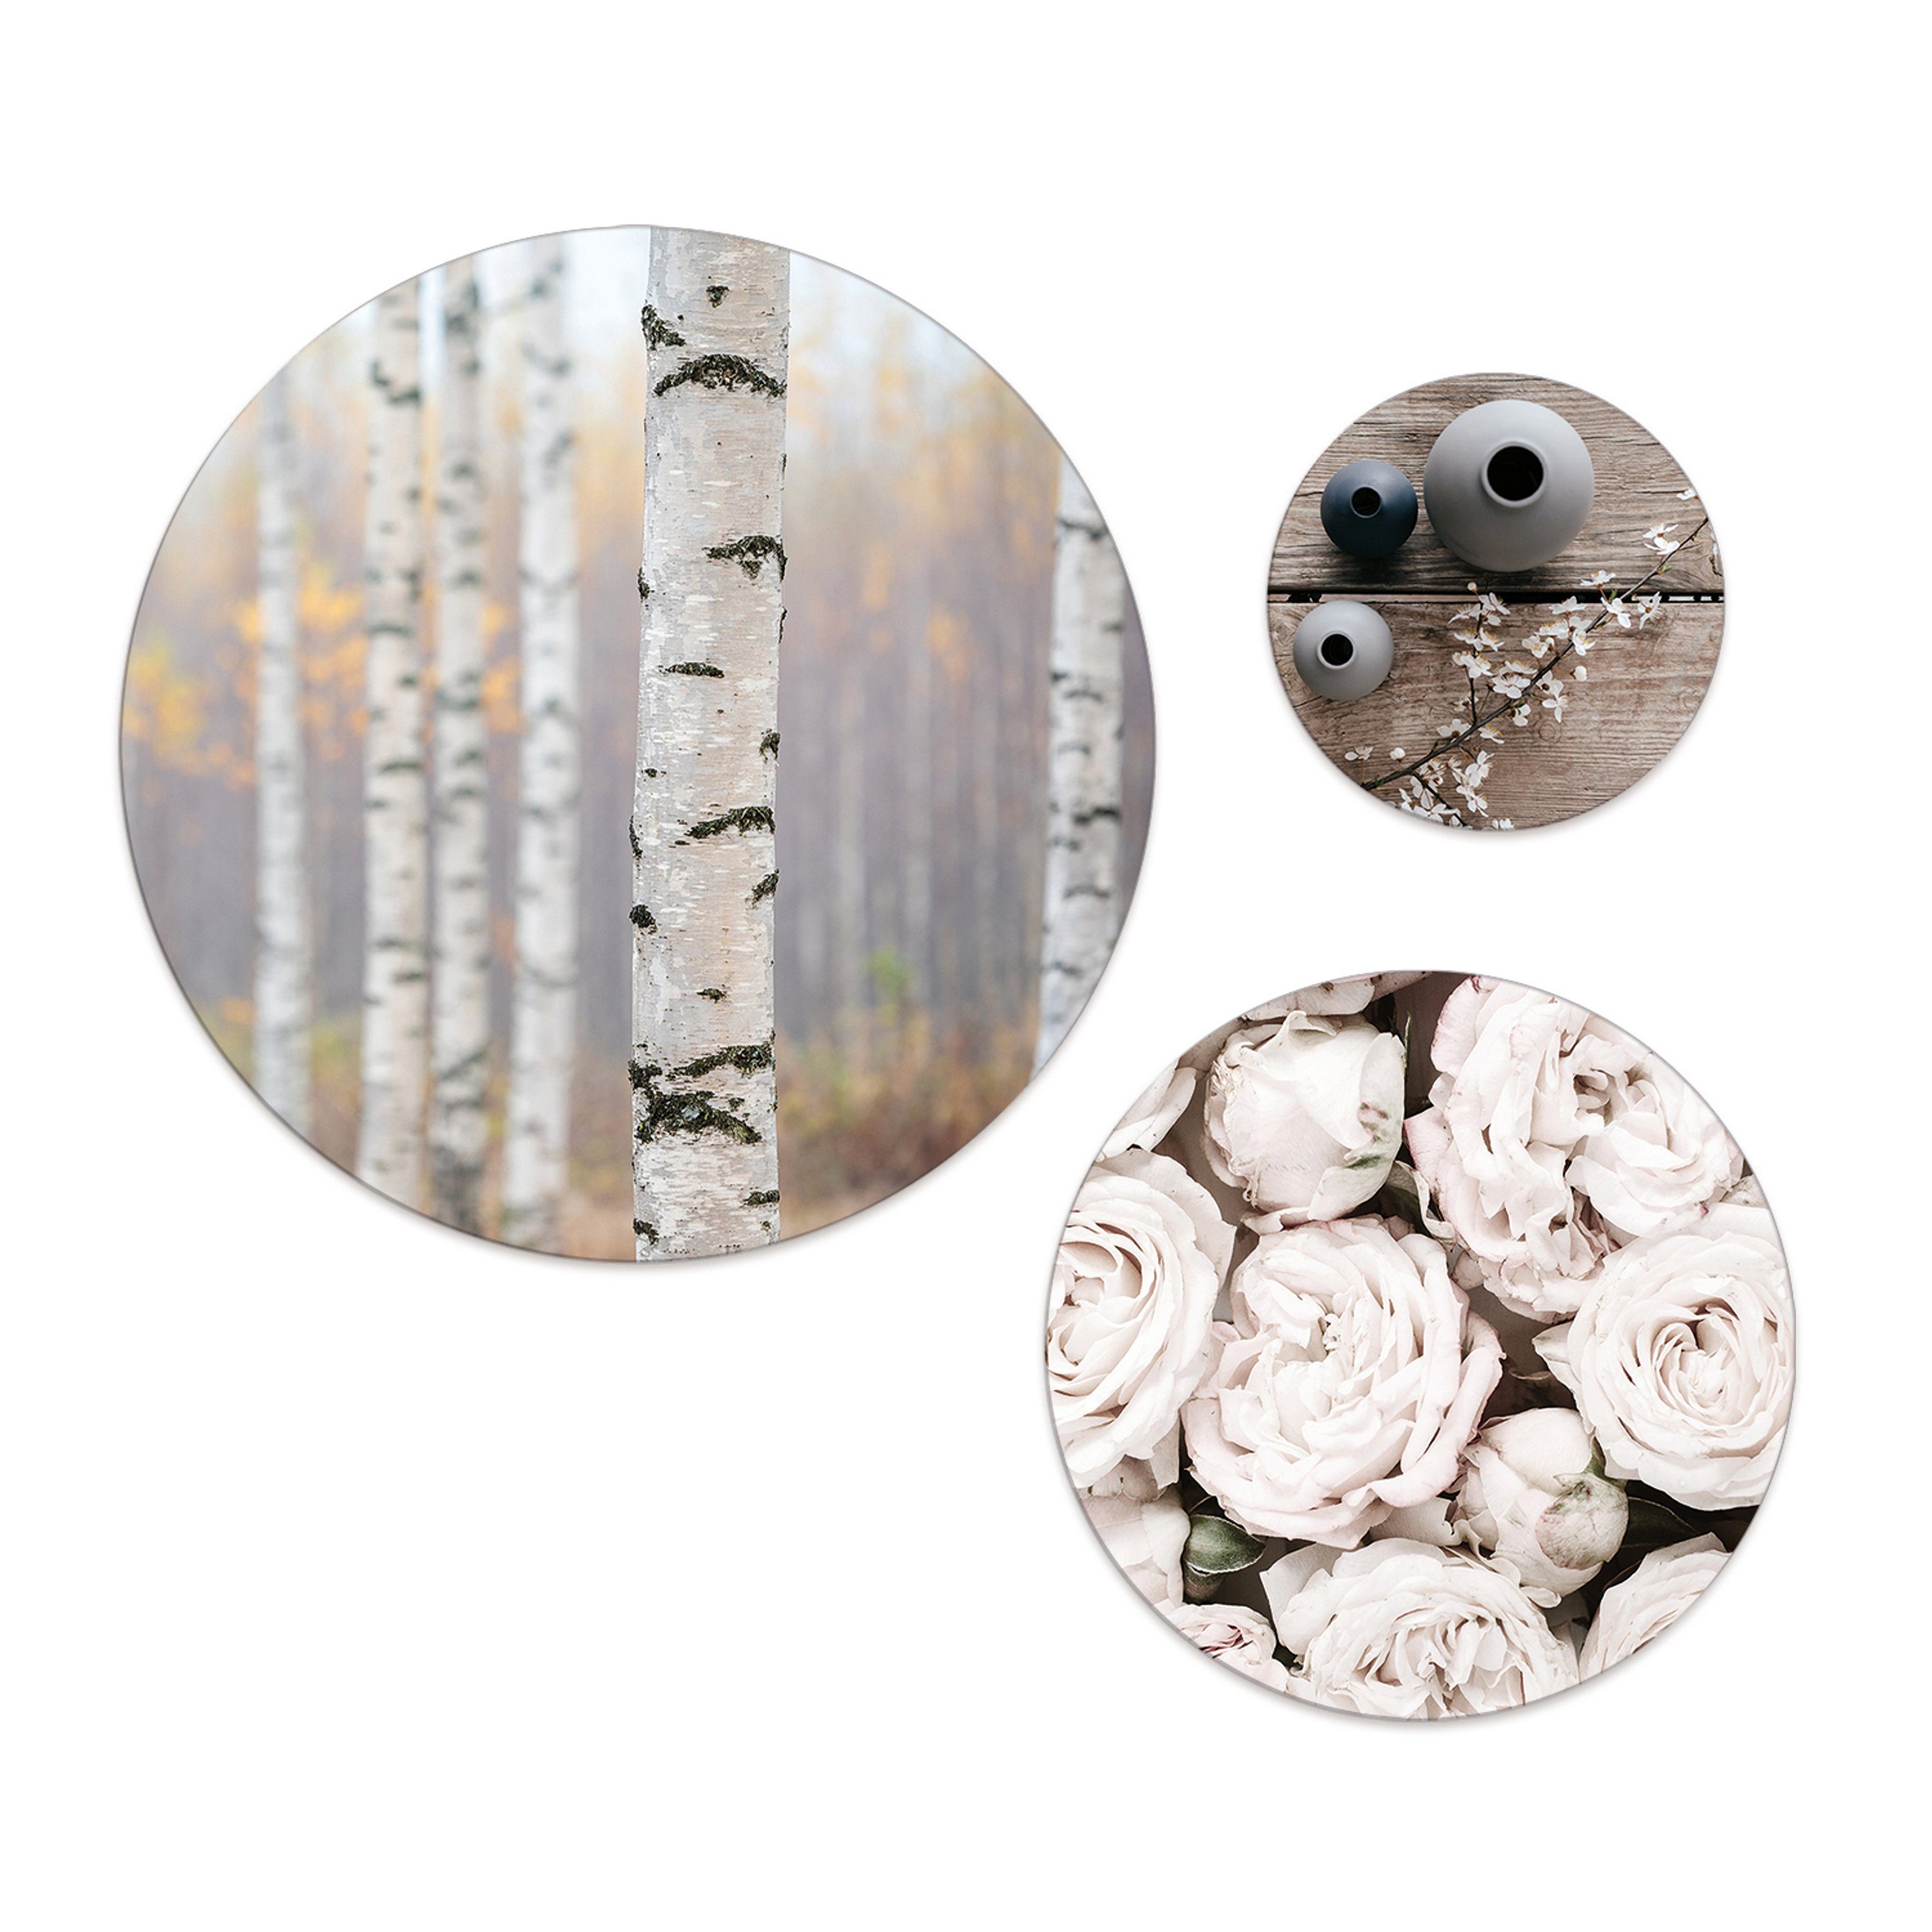 3 Bilder Mehrteilige und Wandbilder mehrteiliges artissimo Deko: Wandkreise Bilder-Set Blumen Pastell, rund Wald Natur